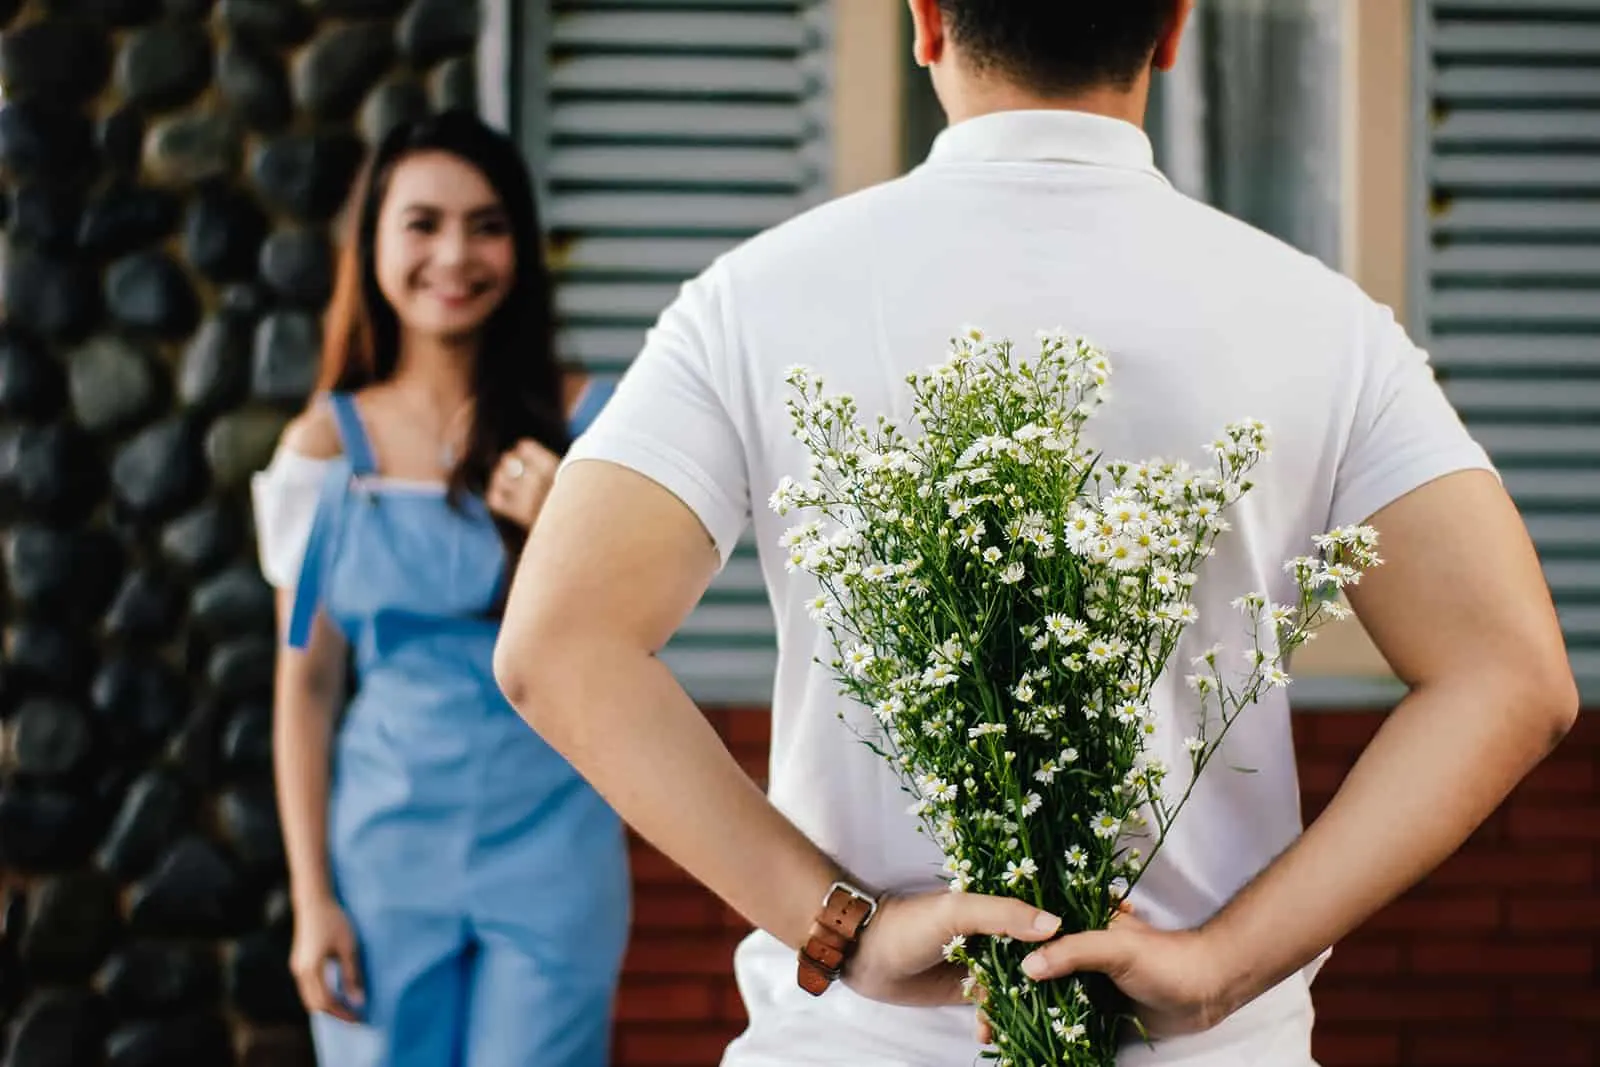 Mann, der einen Blumenstrauß hinter seinem Rücken hält, während er vor lächelnder Frau steht